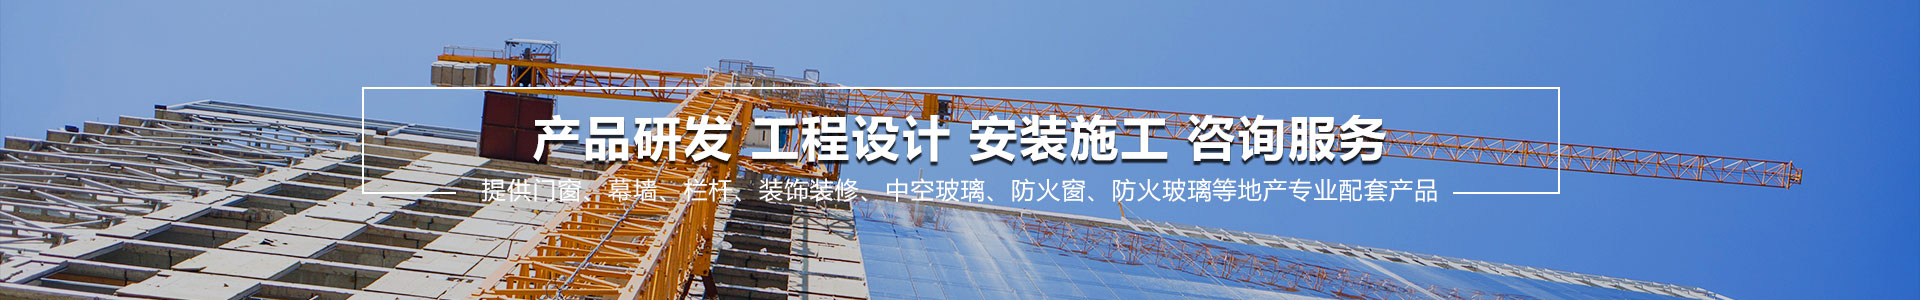 关于当前产品aoa软件下载·(中国)官方网站的成功案例等相关图片